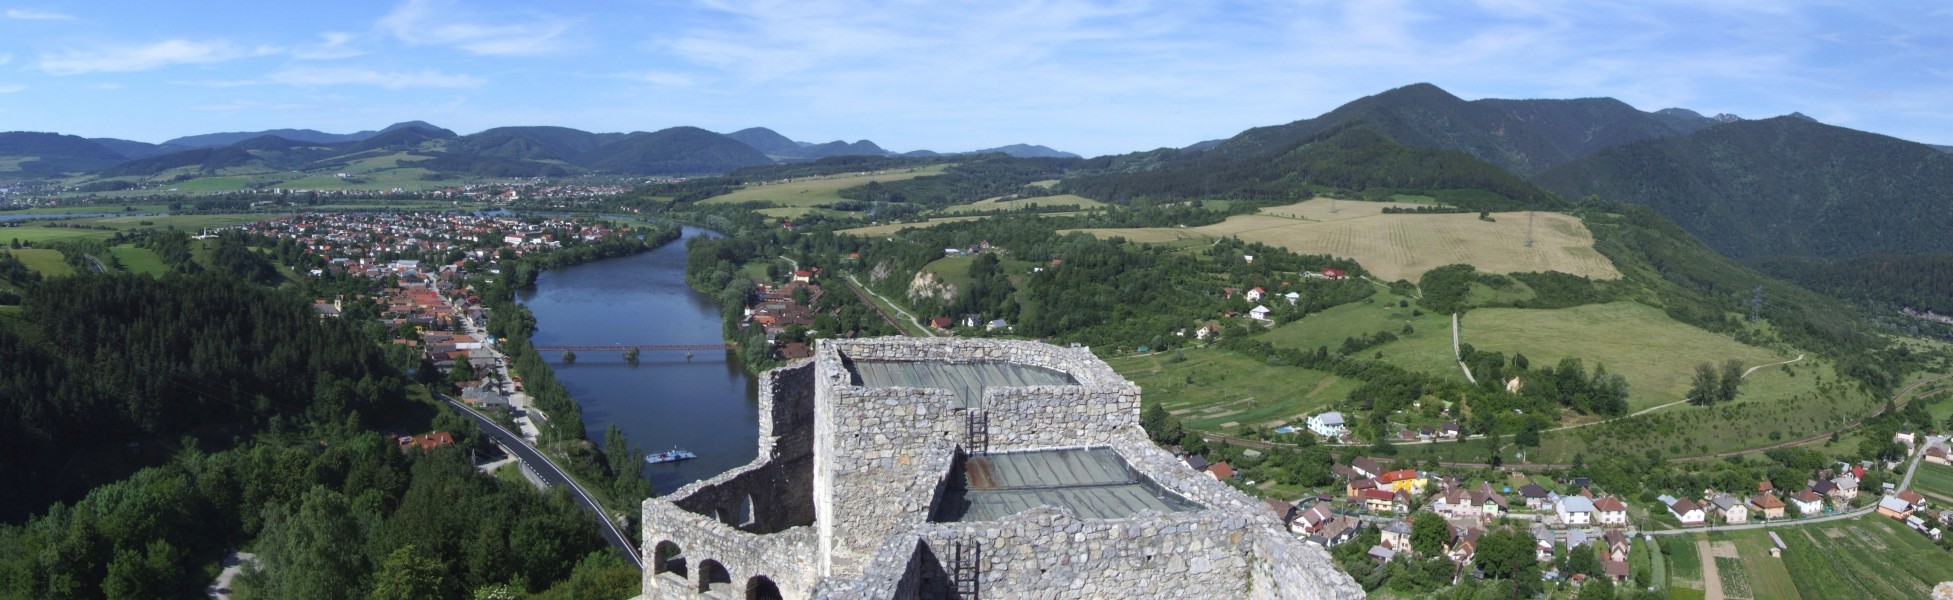 Strečno - pano from castle